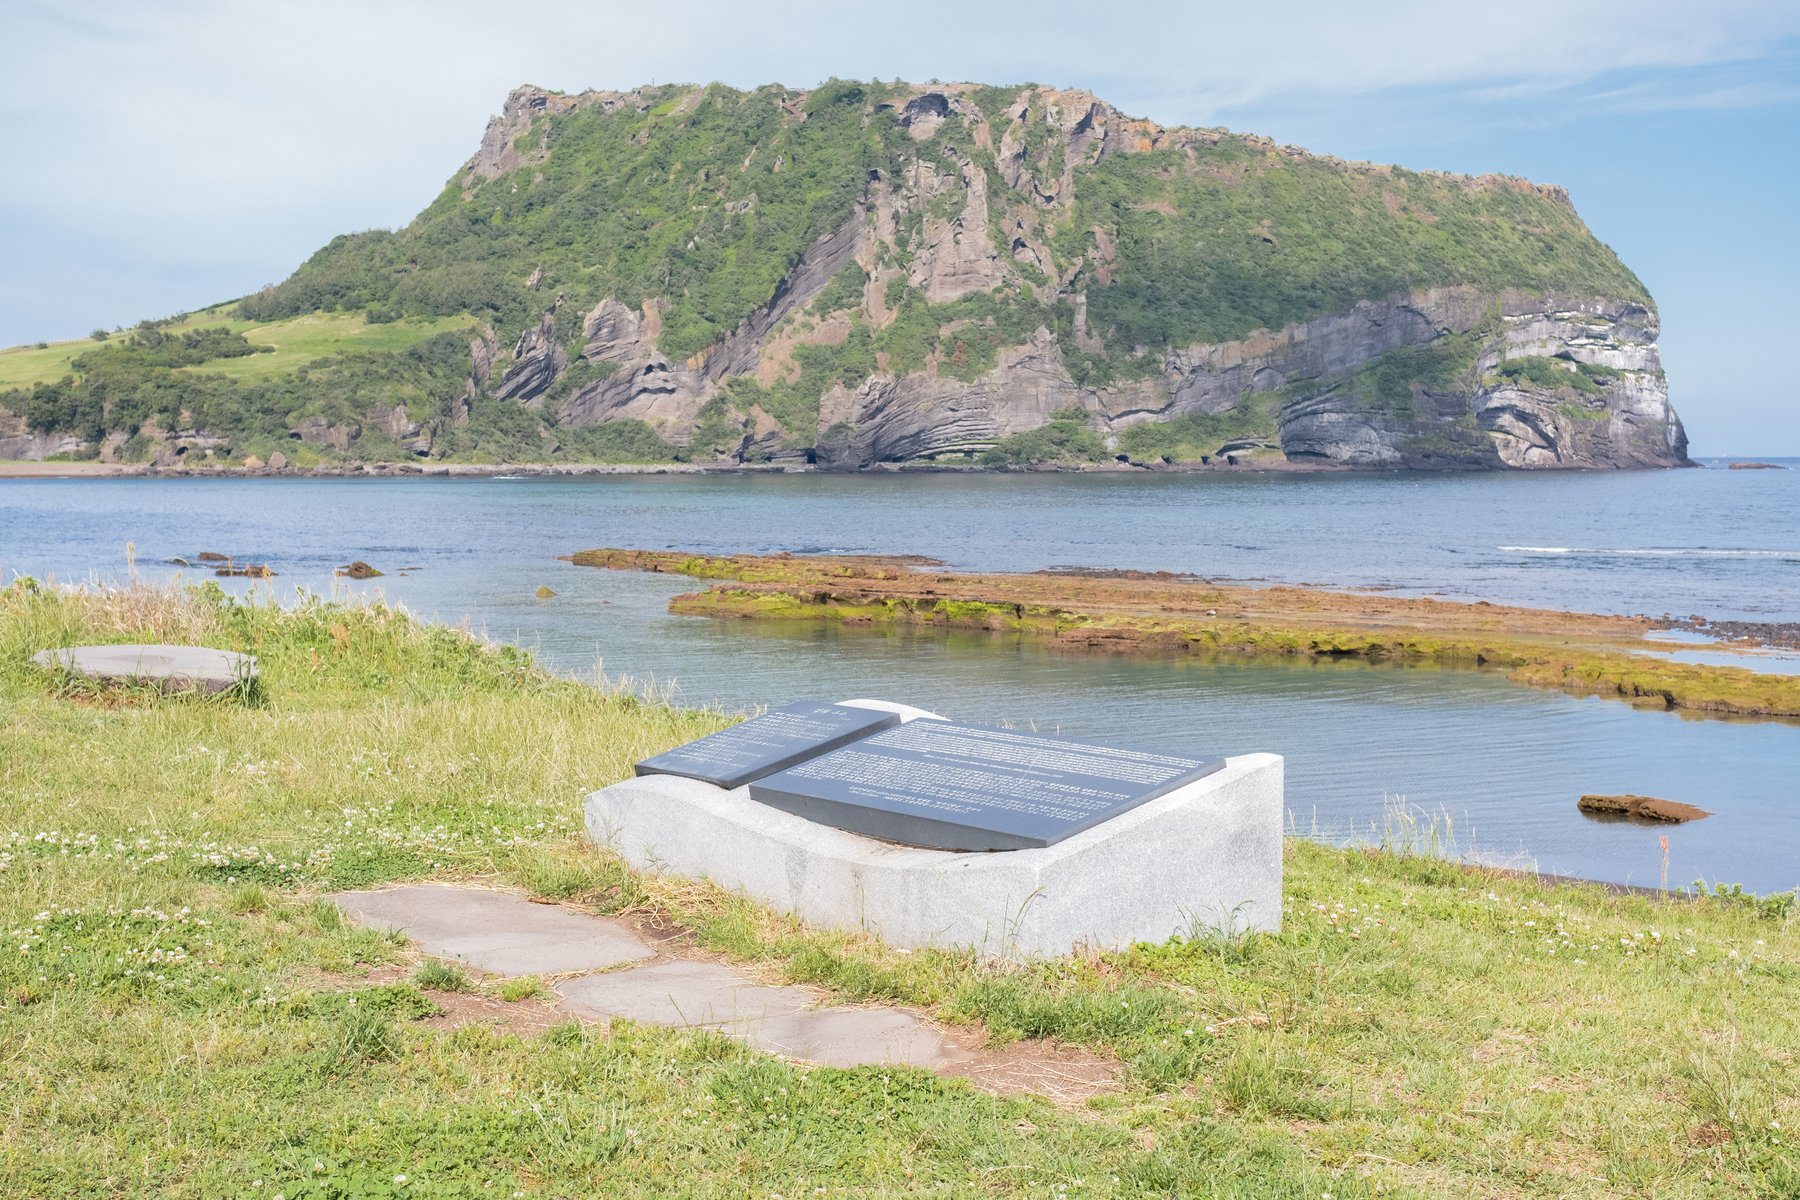 프랑스 작가 J.M G.LE Clezio의 기행문이 담긴 표석. 표석 뒤로 성산일출봉과 바다가 보입니다.